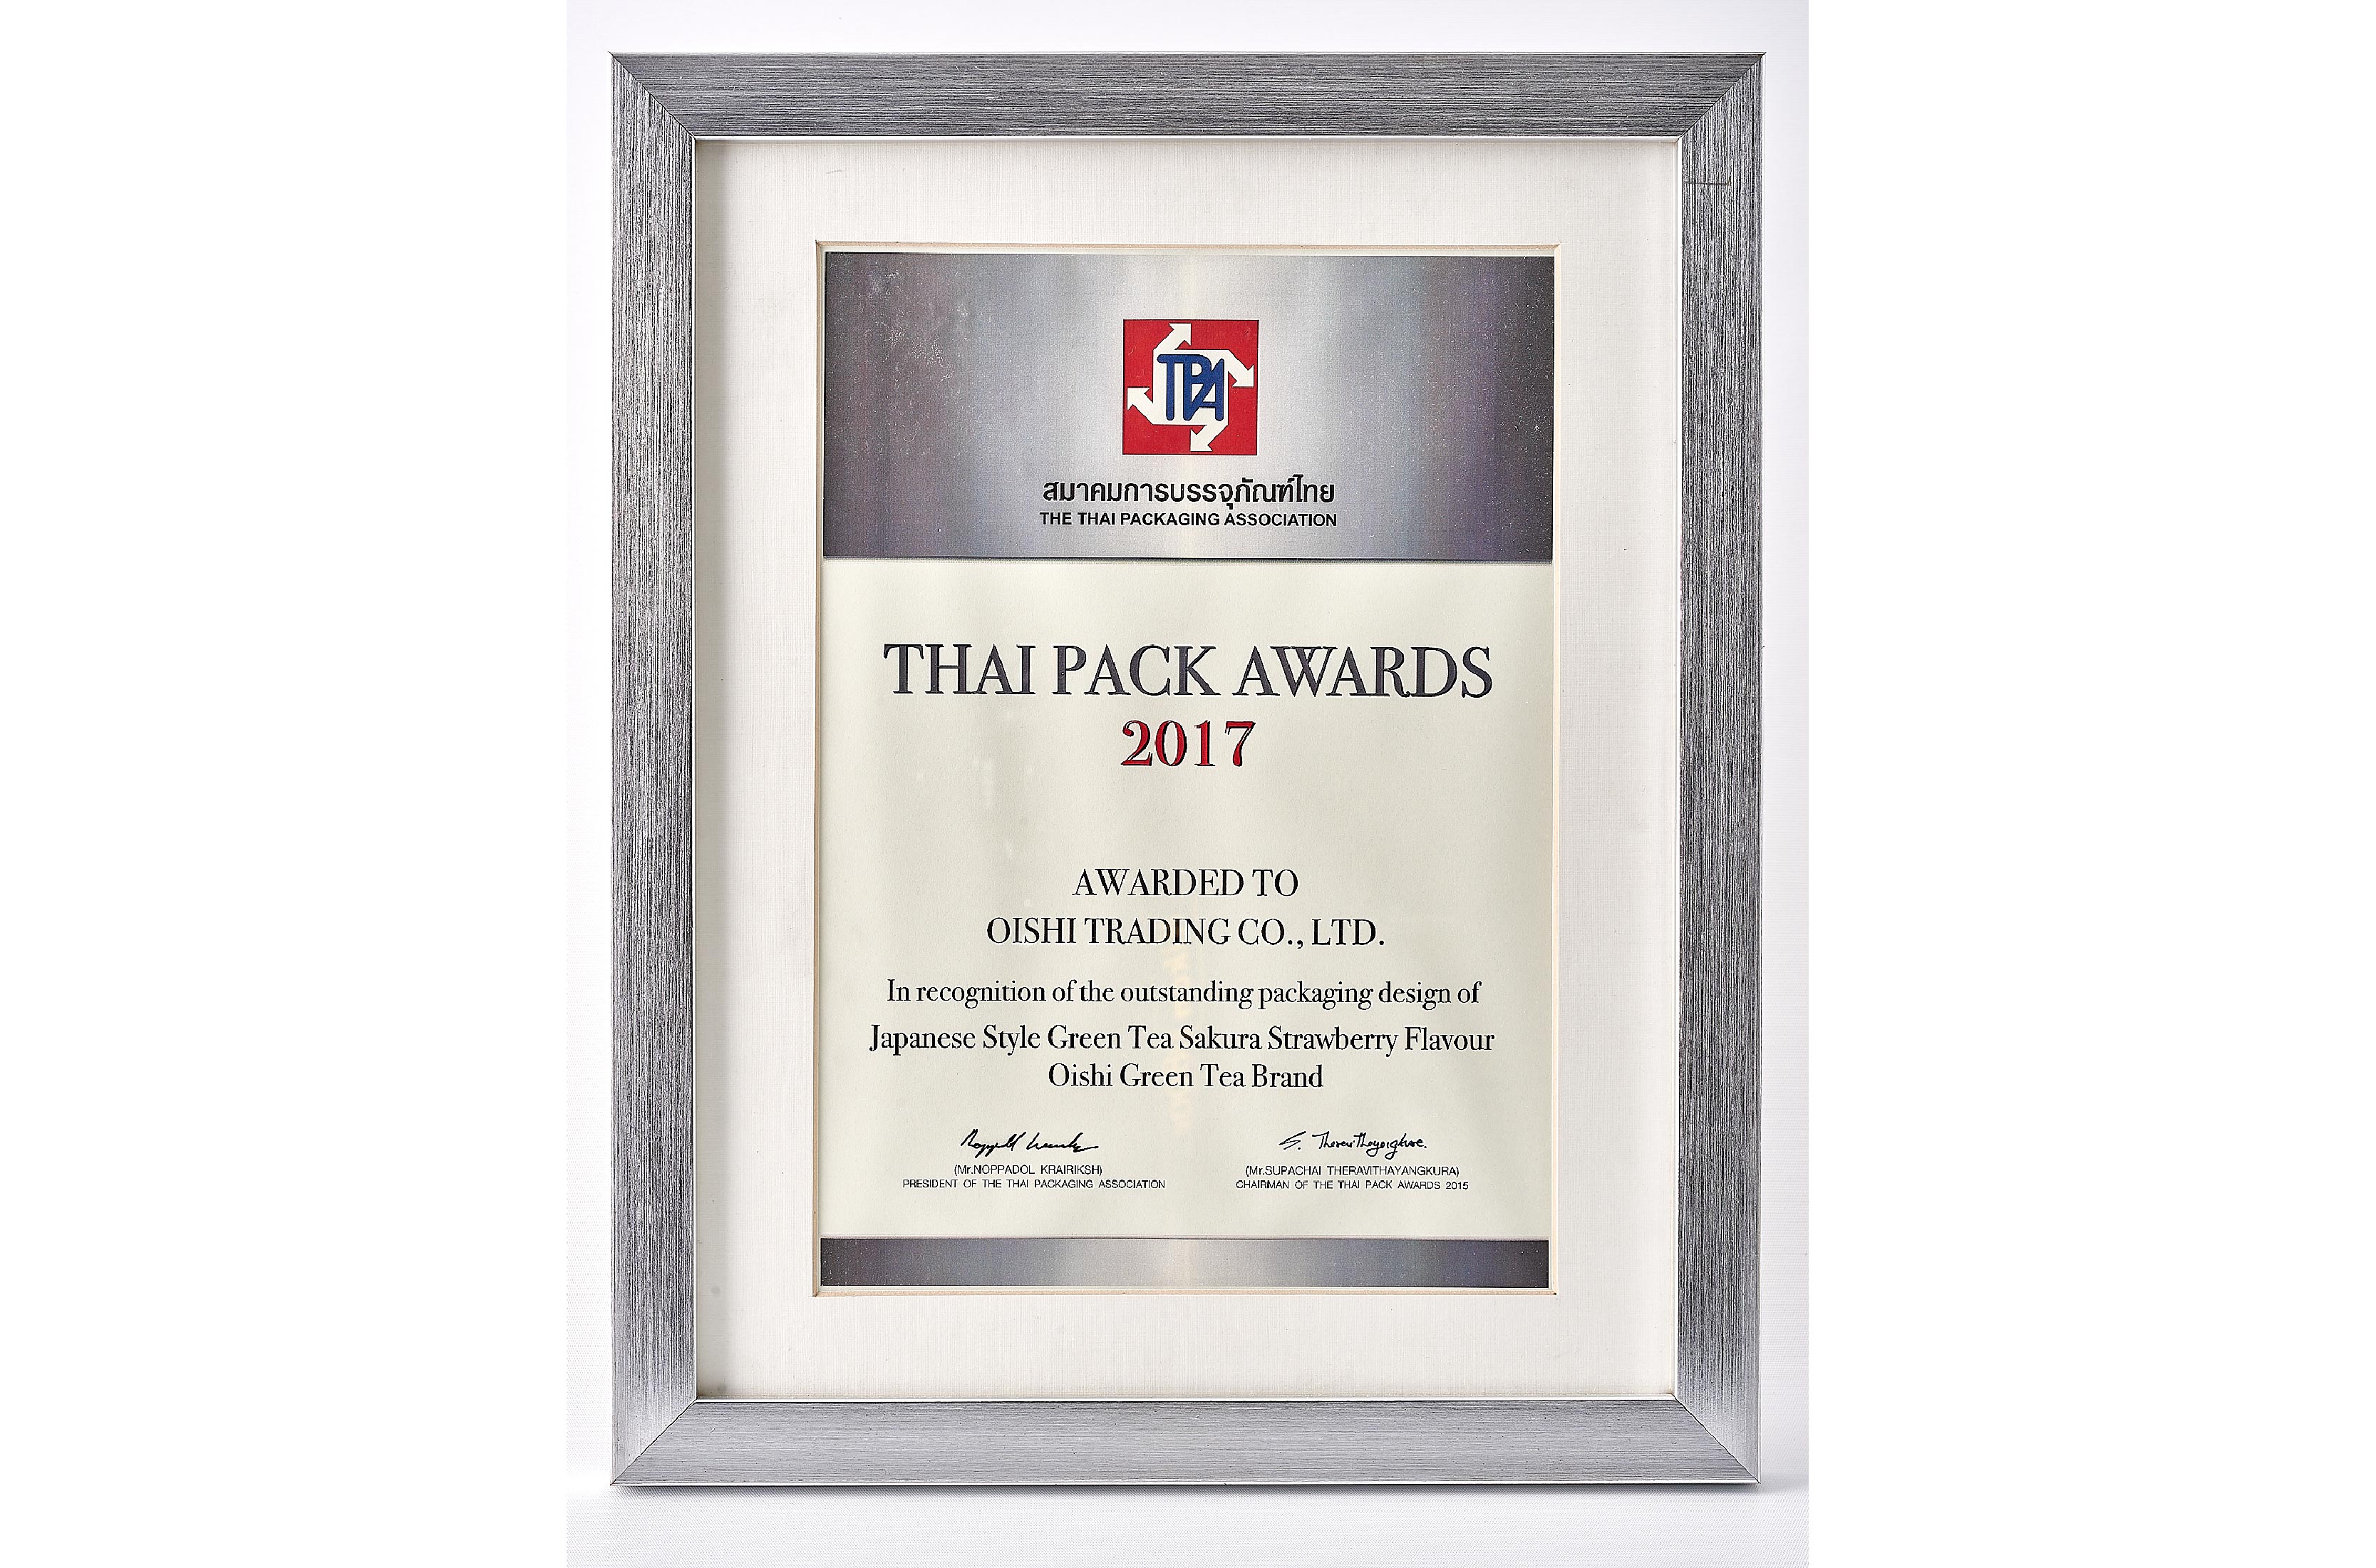 Thai Pack Awards 2017